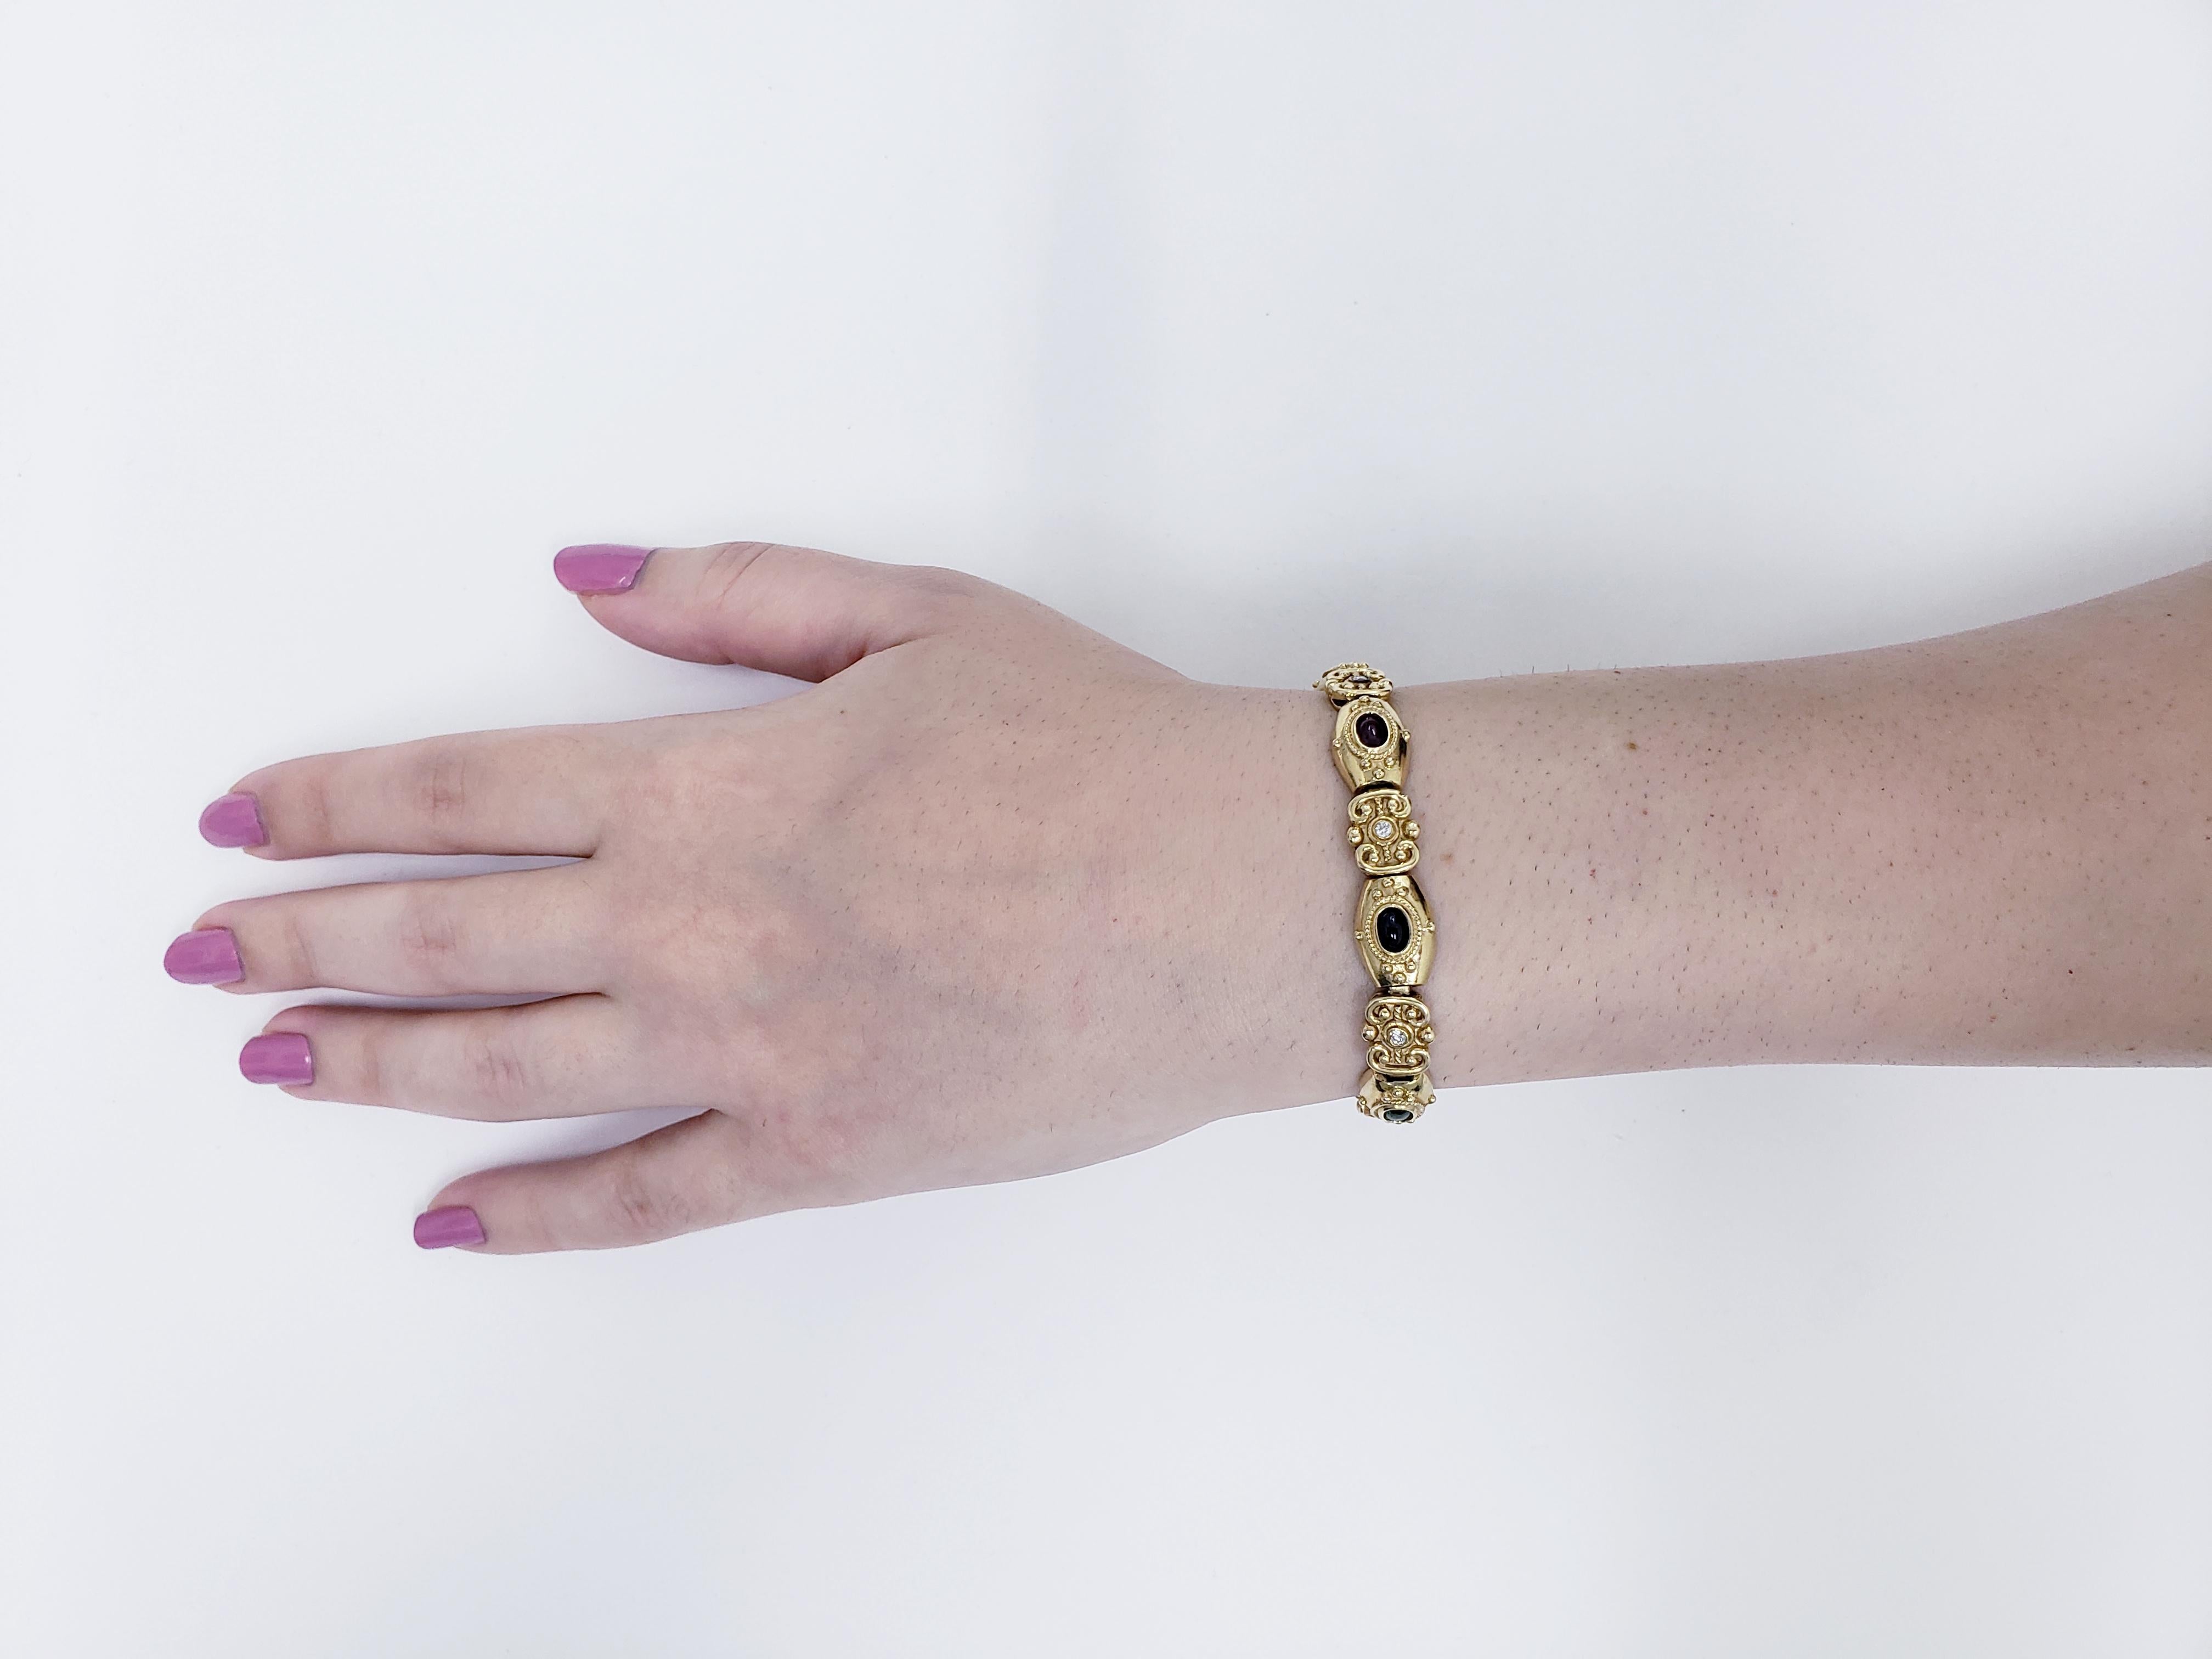 Antikes viktorianisches Cabochon-Armband mit Saphiren, Smaragden, Rubinen und einem Katzenauge in massivem 14-karätigem Gold. Dieses Stück ist luxuriös und die Handwerkskunst ist durch und durch sichtbar. Das Gesamtkaratgewicht der Diamanten beträgt